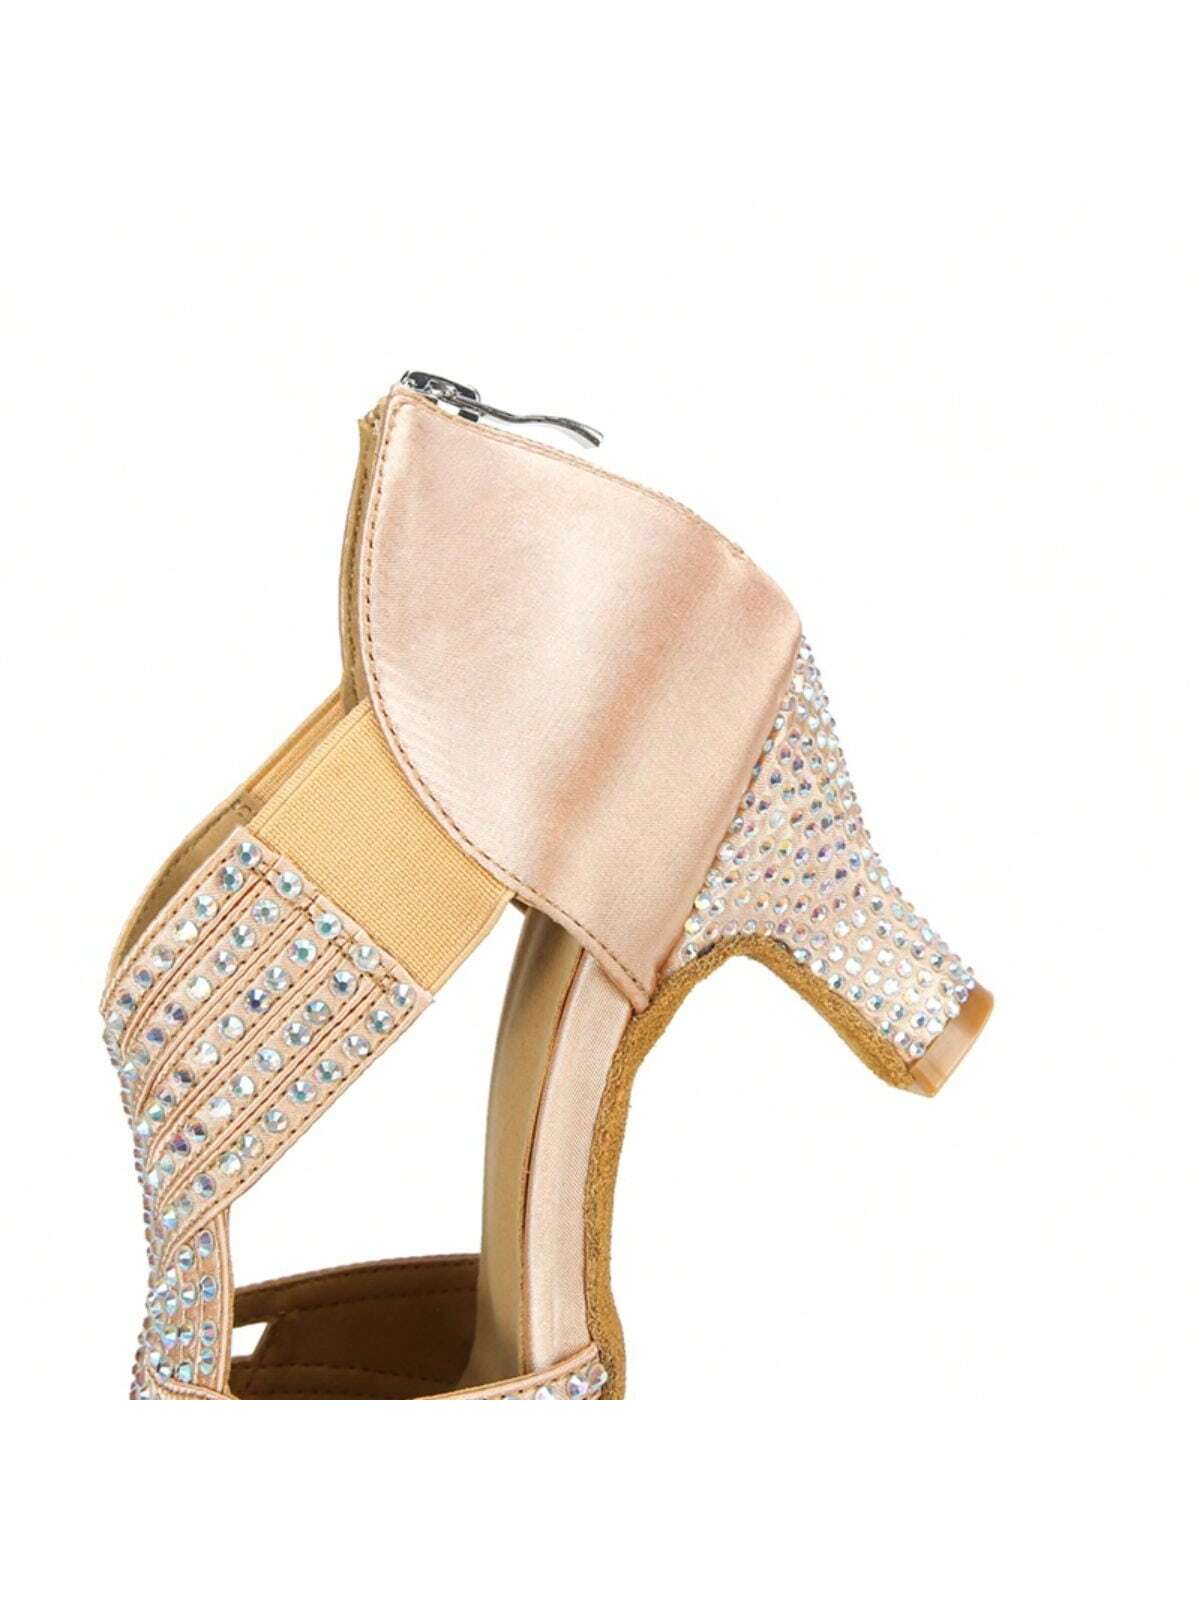 1 Pair Apricot Diamond-studded Satin Fashionable Comfortable Mid-heel Latin Dance Tango Dance Social Dance Shoes-Apricot-9